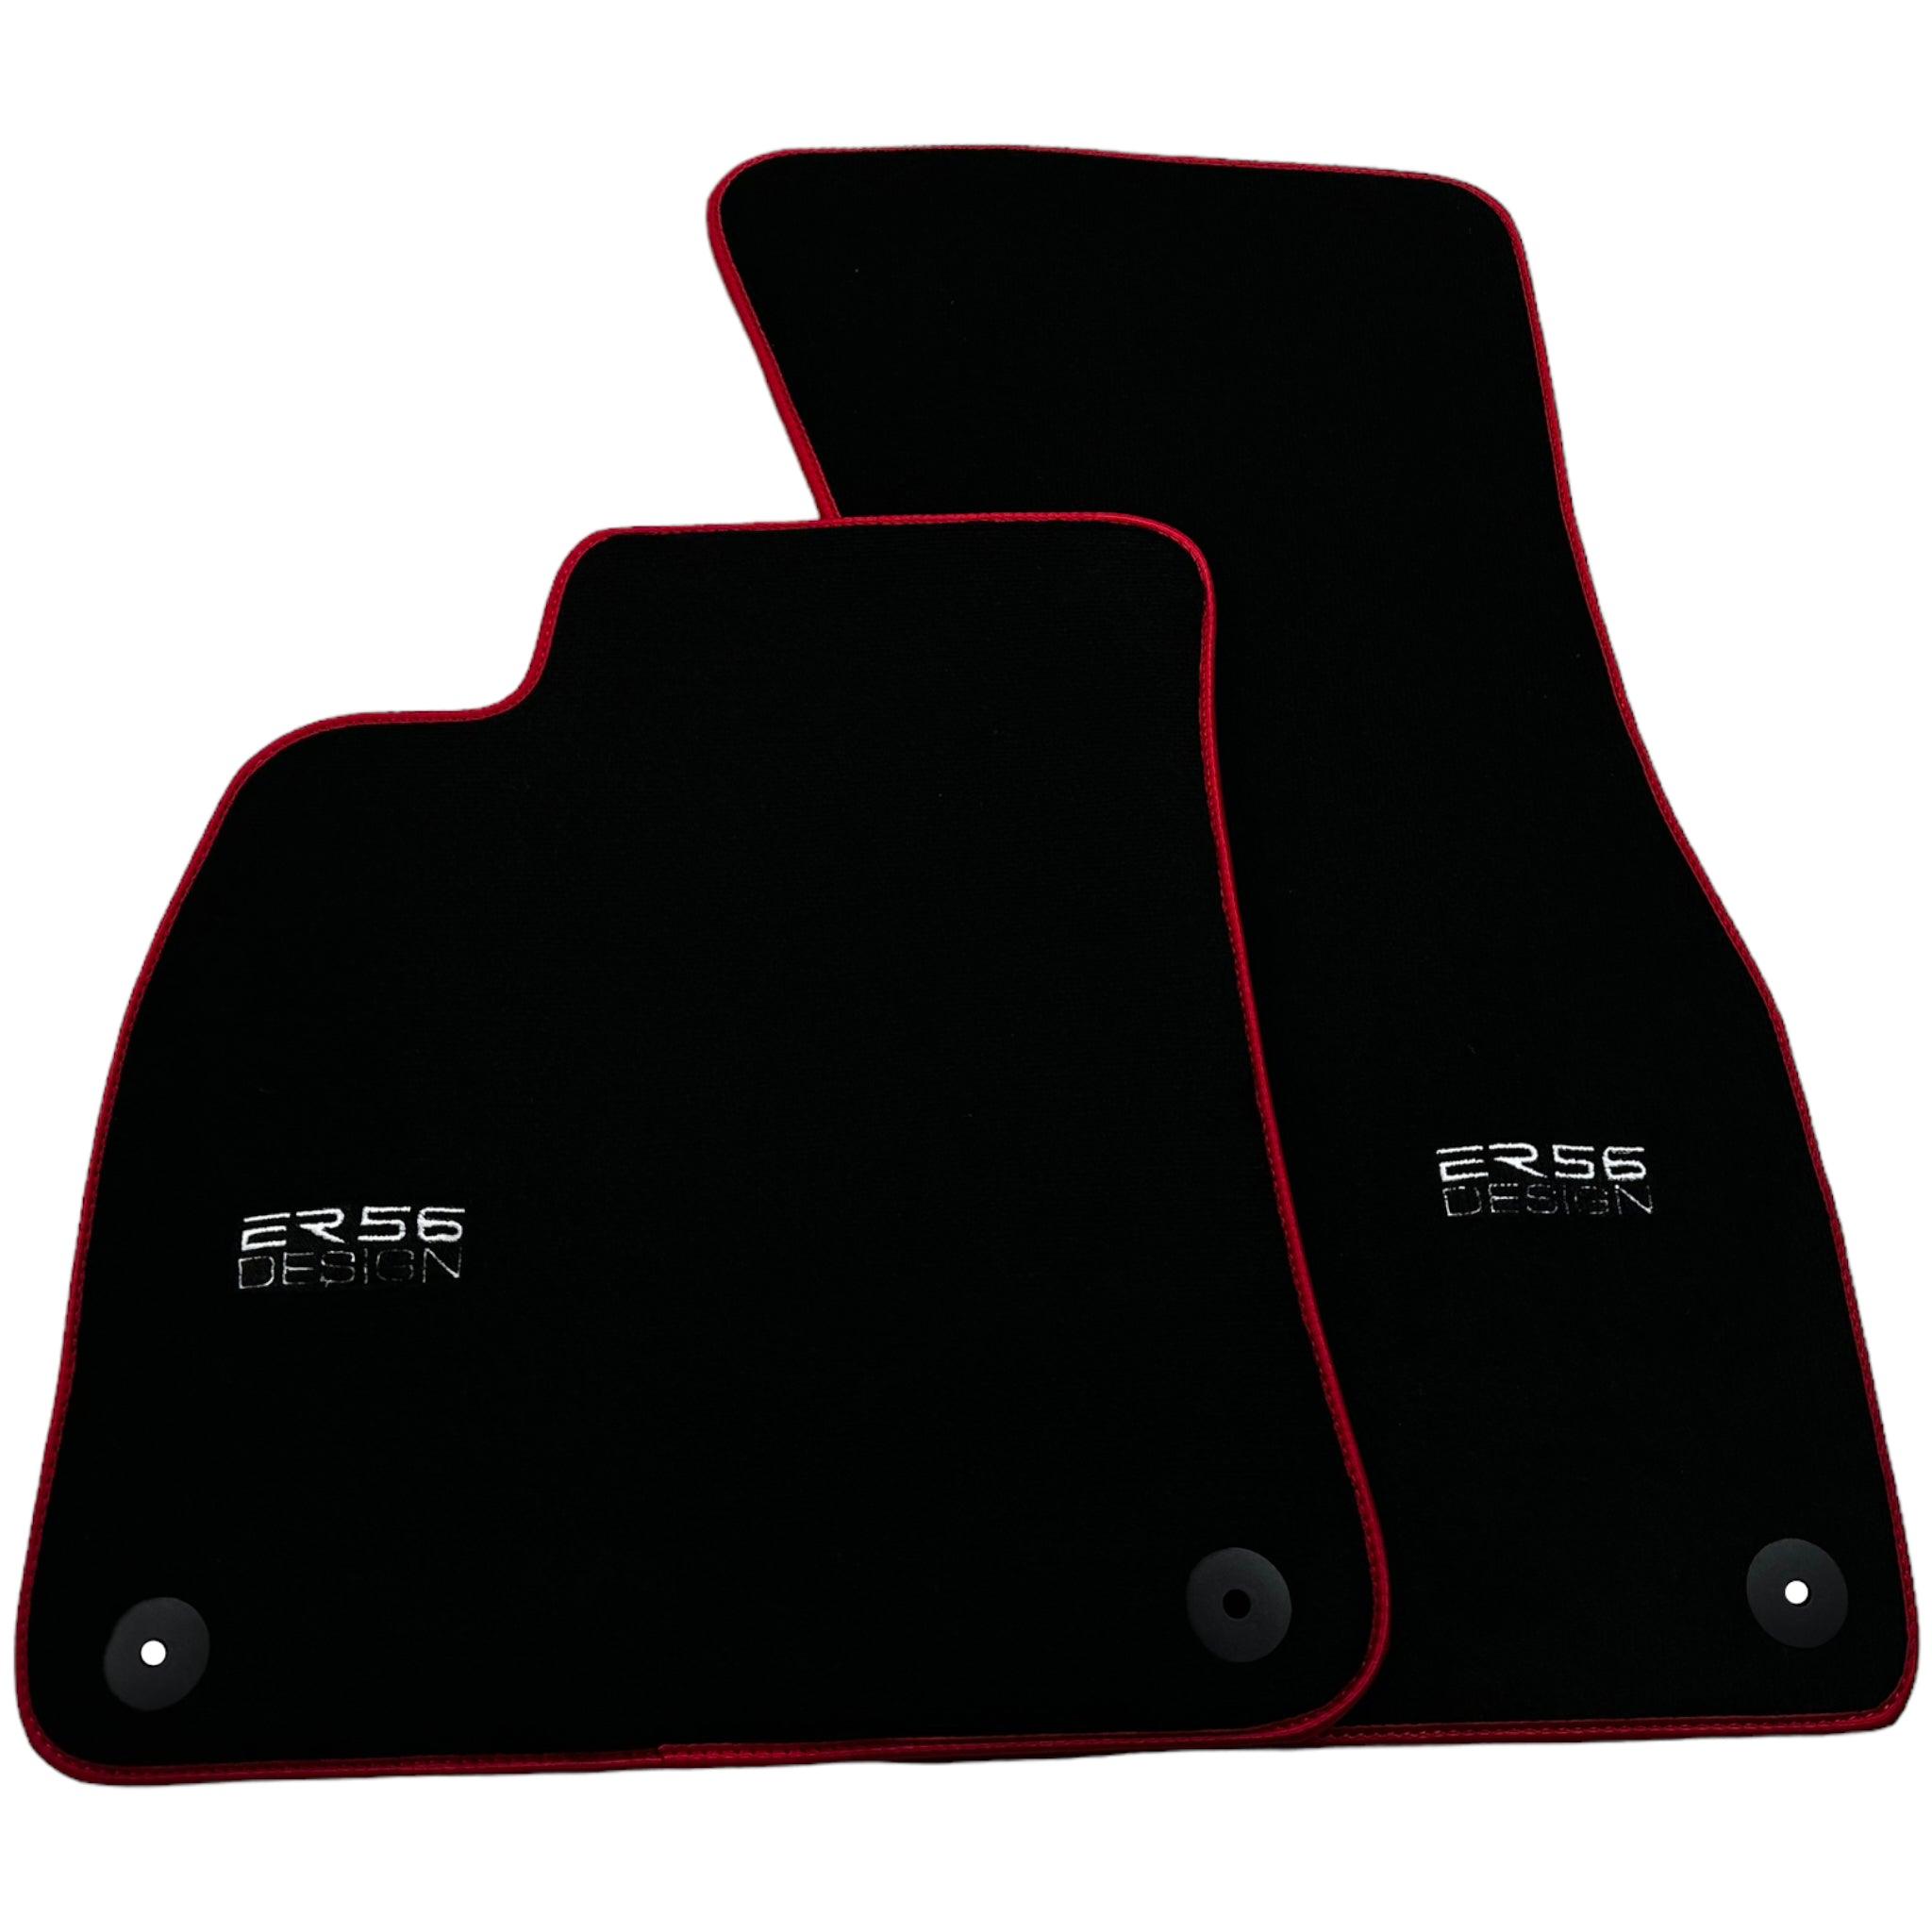 Black Floor Mats For Audi A6 C8 (2018) ER56 Design with Red Trim